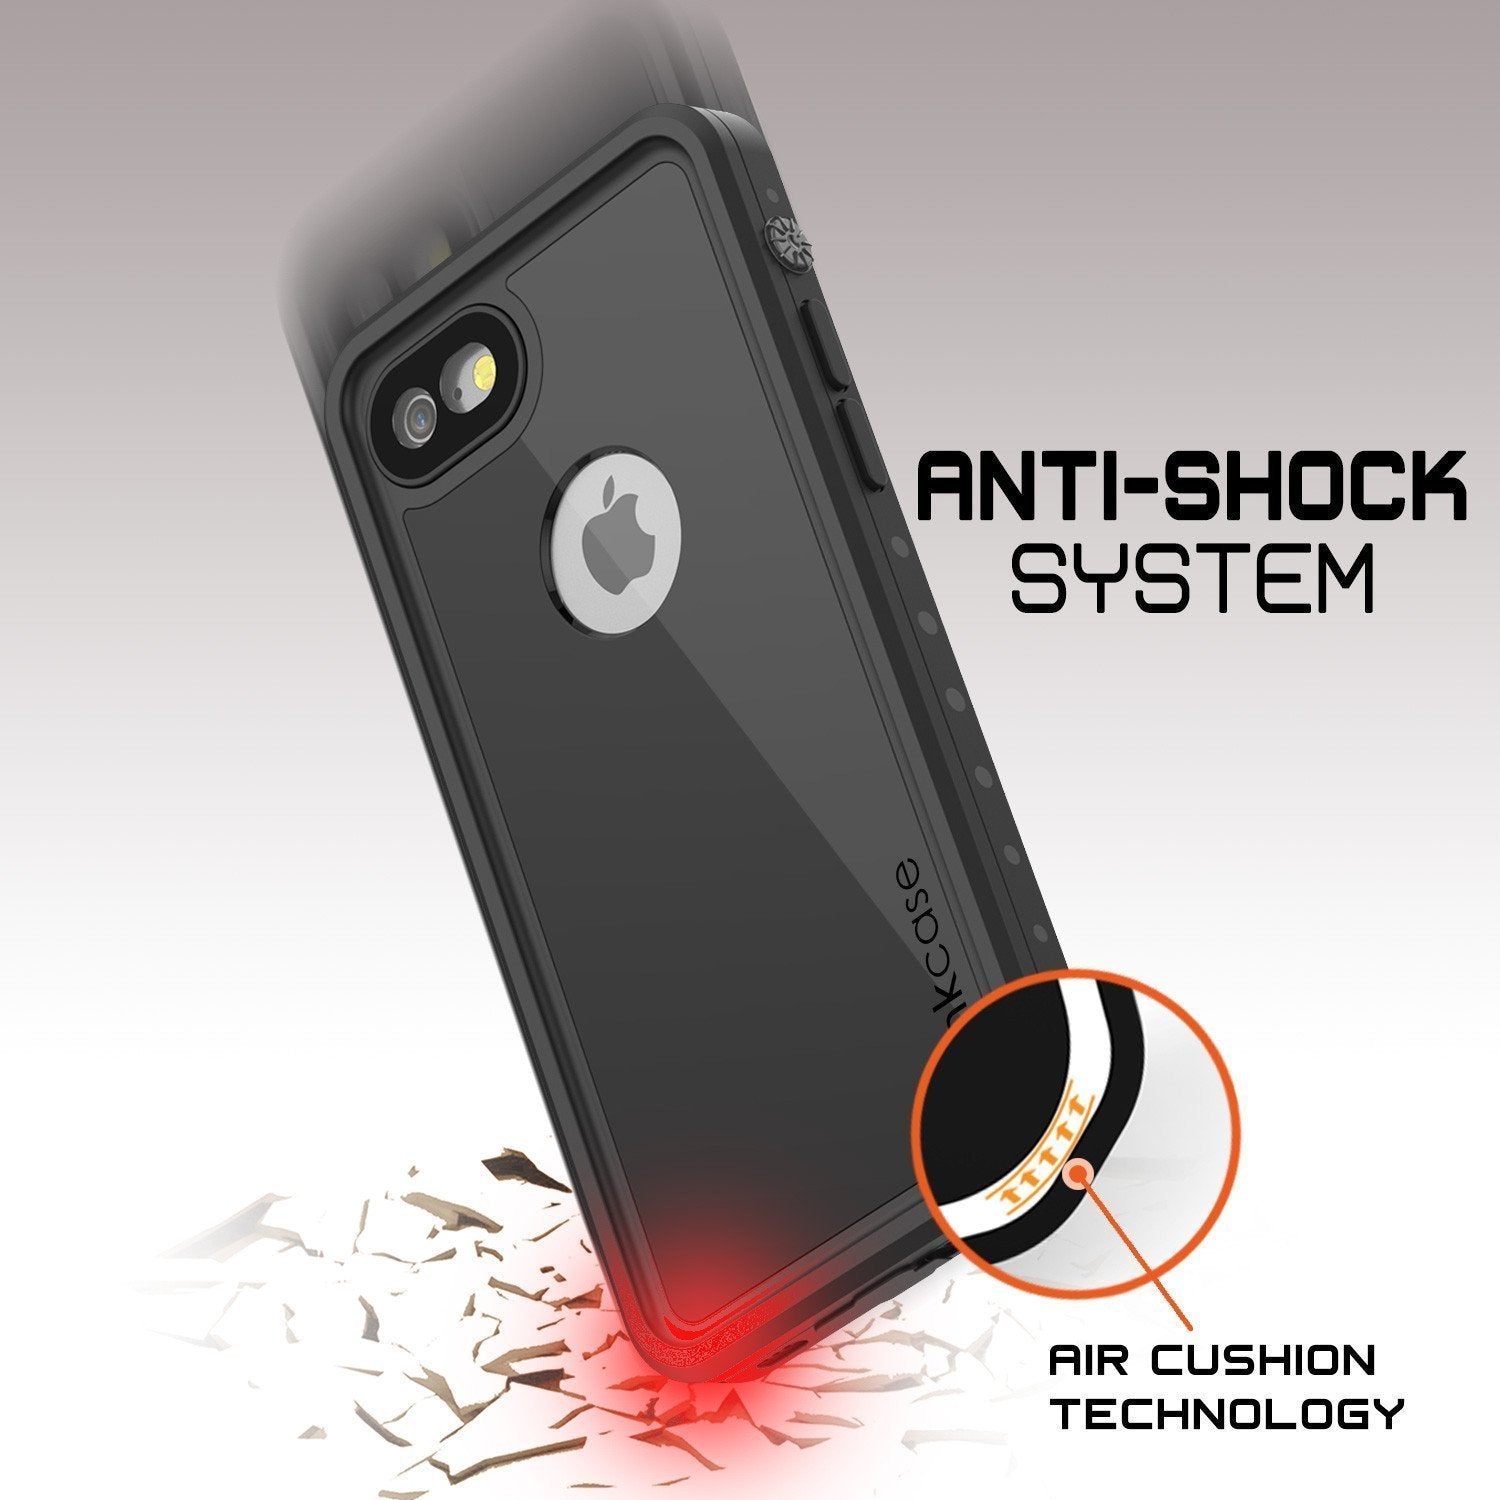 iPhone 8 Waterproof Case, Punkcase [Black] [StudStar Series] [Slim Fit] [IP68 Certified][Dirtproof] [Snowproof] - PunkCase NZ